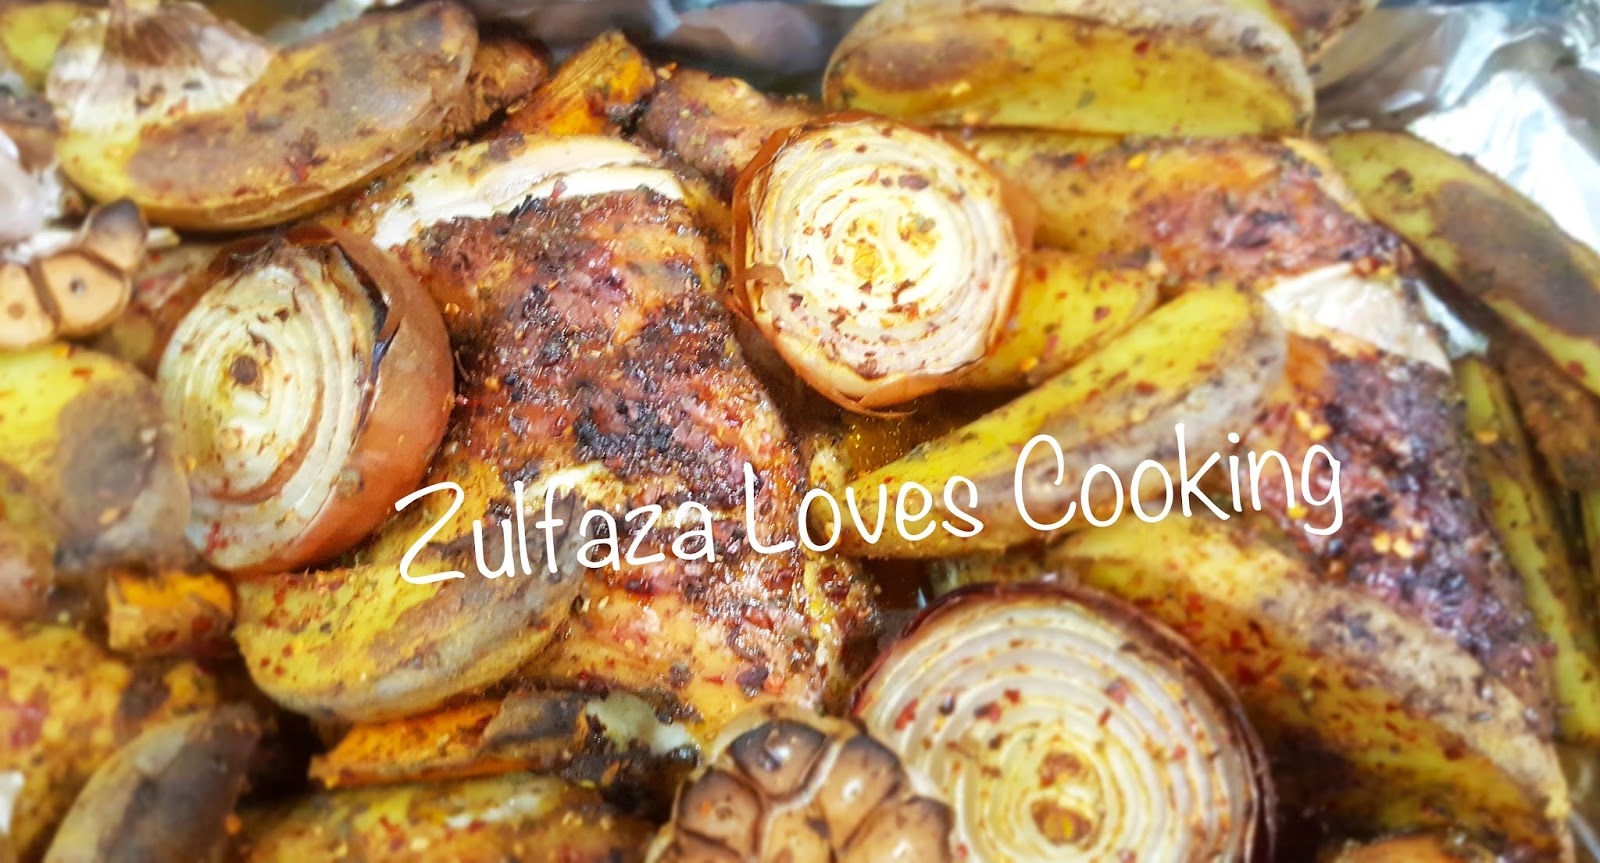 ZULFAZA LOVES COOKING: Paha ayam panggang